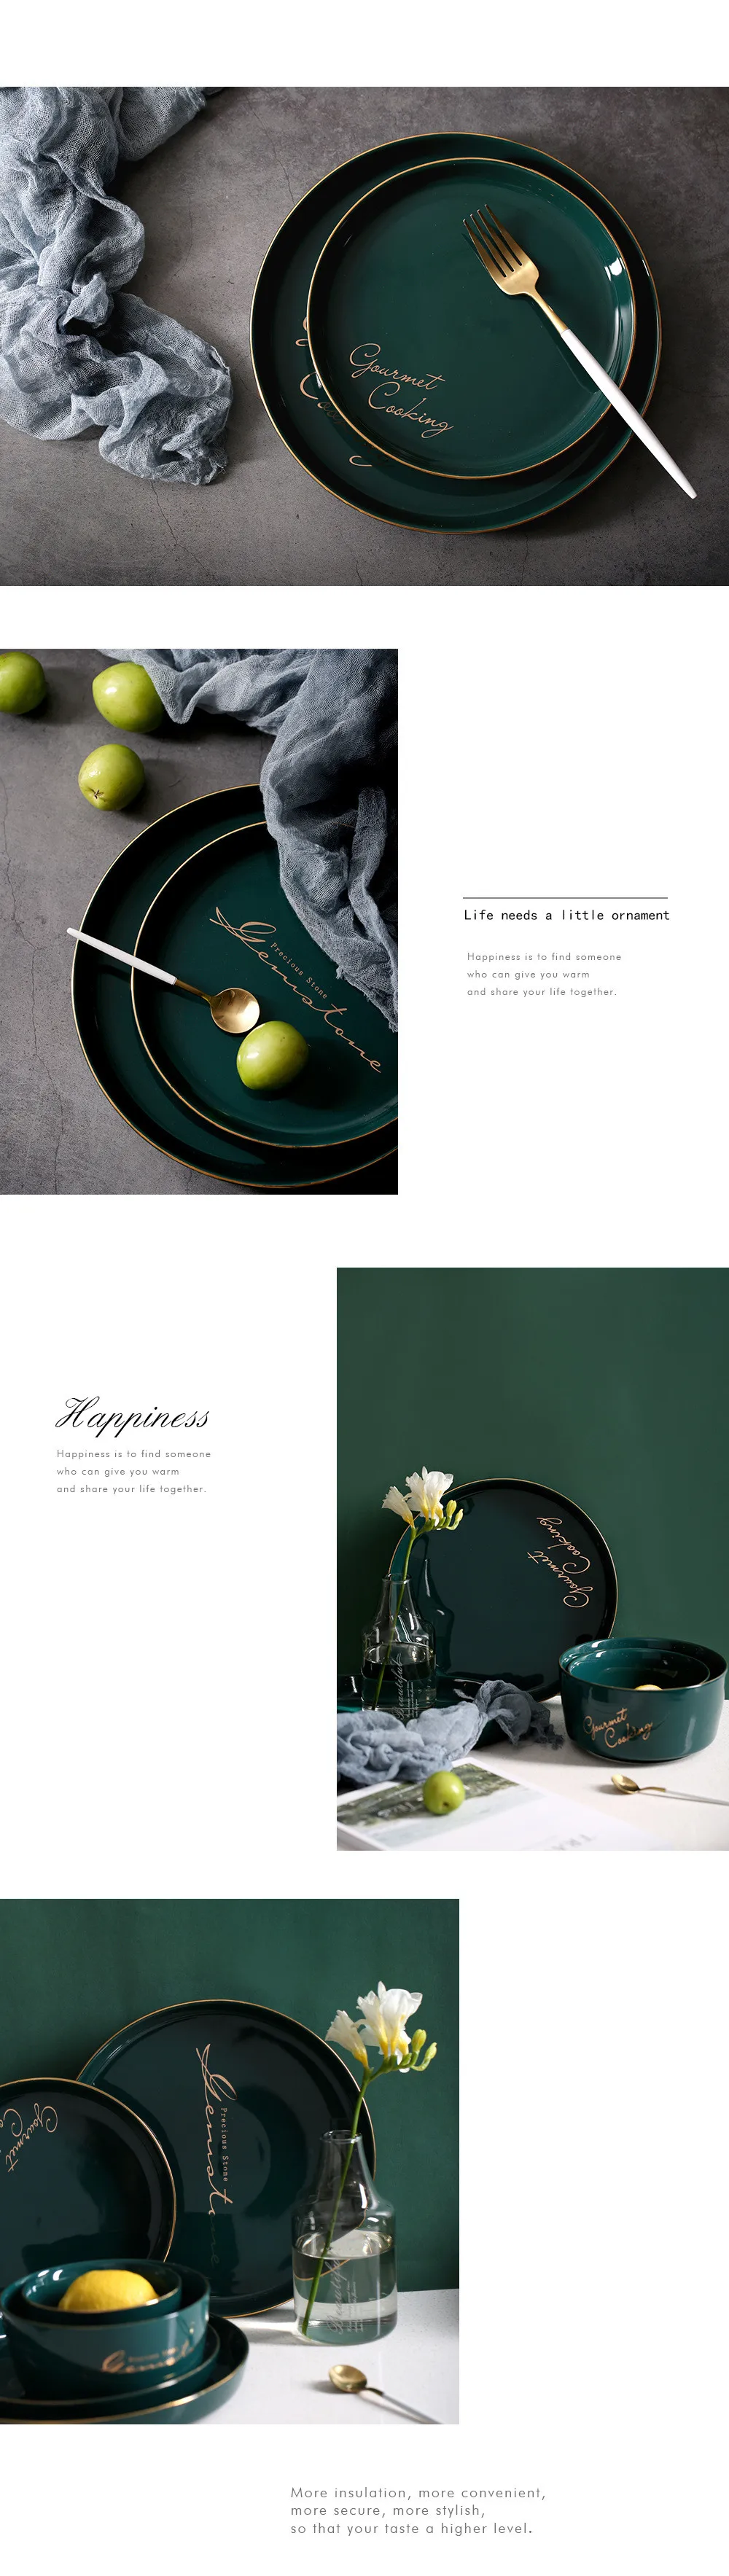 Nordic золотой край Керамика пластина зеленого цвета серьги с круглым камнем бытовой ужин неглубокая тарелка десерт лоток завтрак фруктовый посуда для пирожных пластина